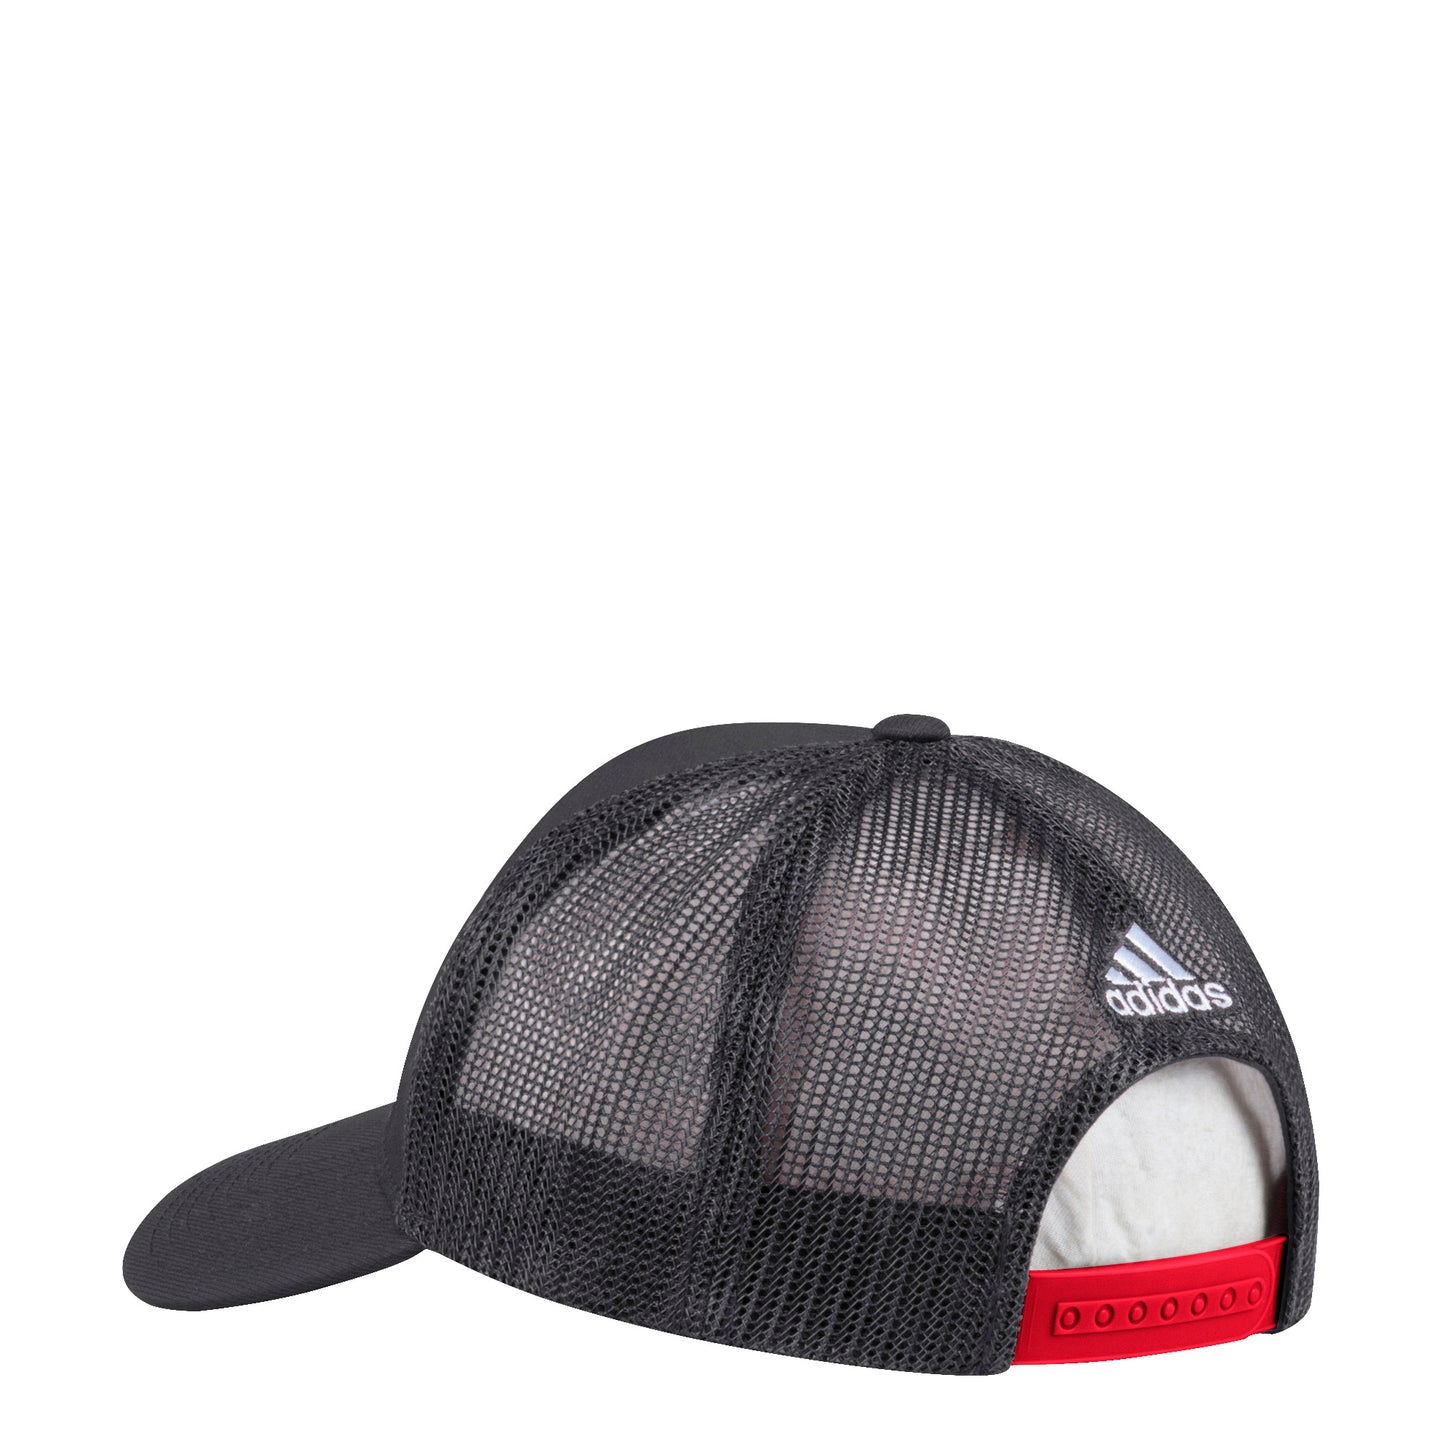 Men’s Chicago Blackhawks Finished Goods Adjustable A-Frame Mesh Back Hat By Adidas